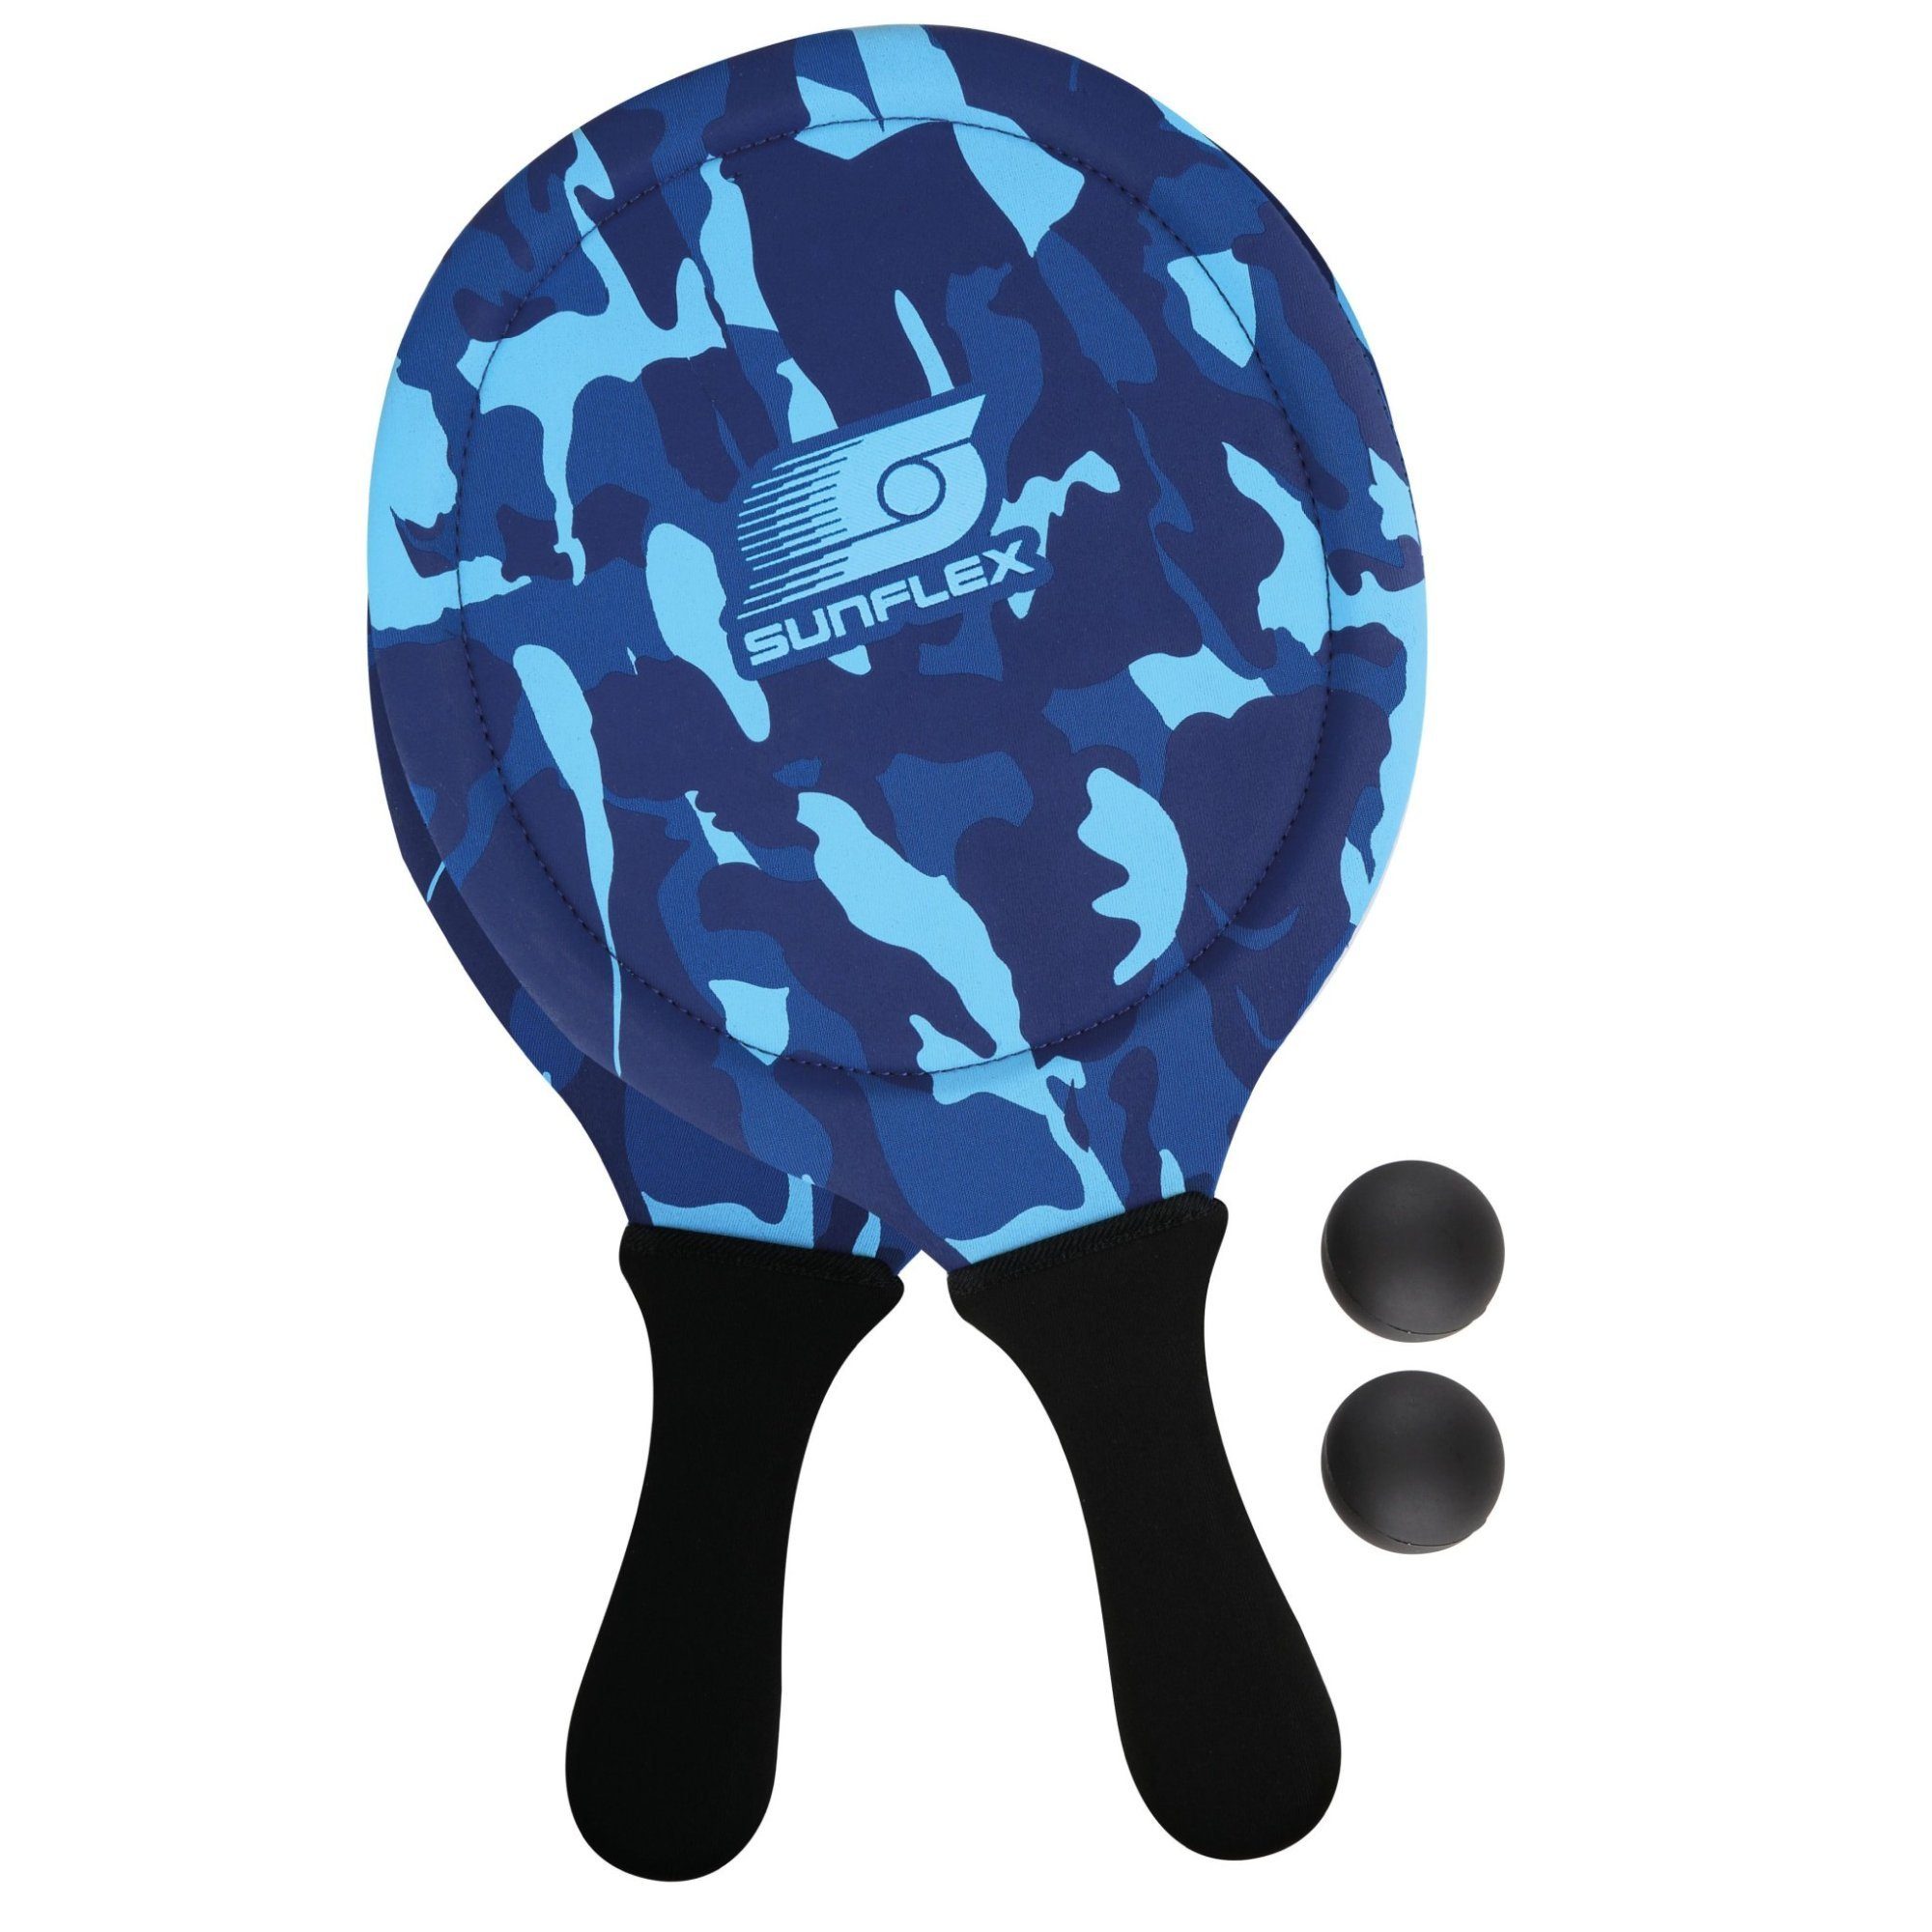 Sunflex Beachballschläger sunflex Beach Ball Set Camo blau, Wasserfest, extrem stabil und griffig